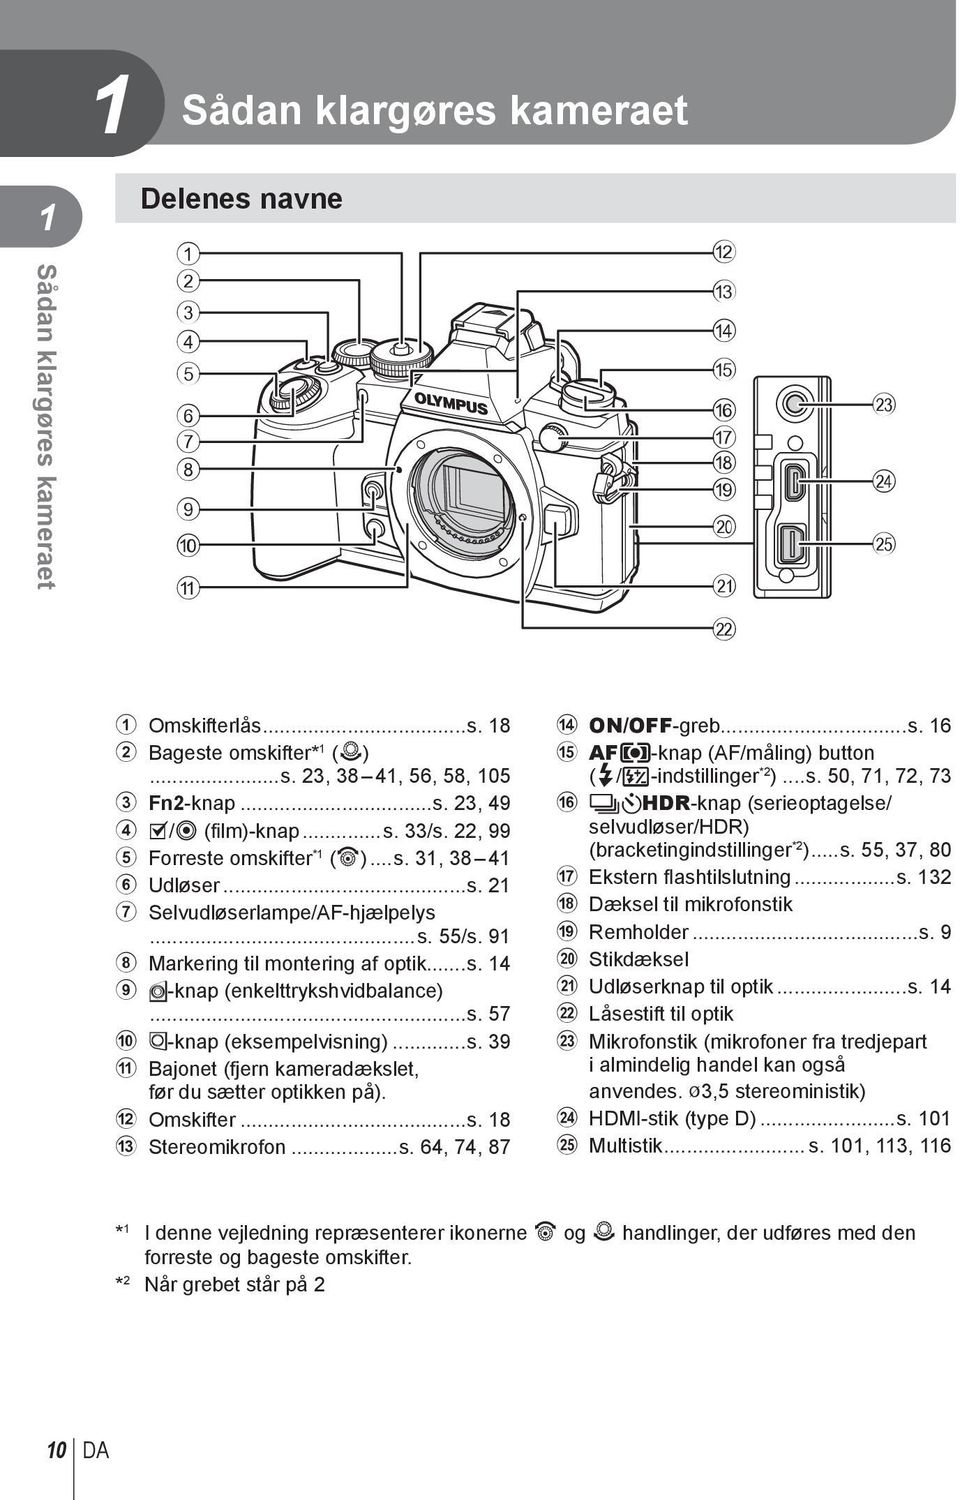 ..s. 57 0 Z-knap (eksempelvisning)...s. 39 a Bajonet (fjern kameradækslet, før du sætter optikken på). b Omskifter...s. 18 c Stereomikrofon...s. 64, 74, 87 d ON/OFF-greb...s. 16 e AFm-knap (AF/måling) button (#/w-indstillinger * ).